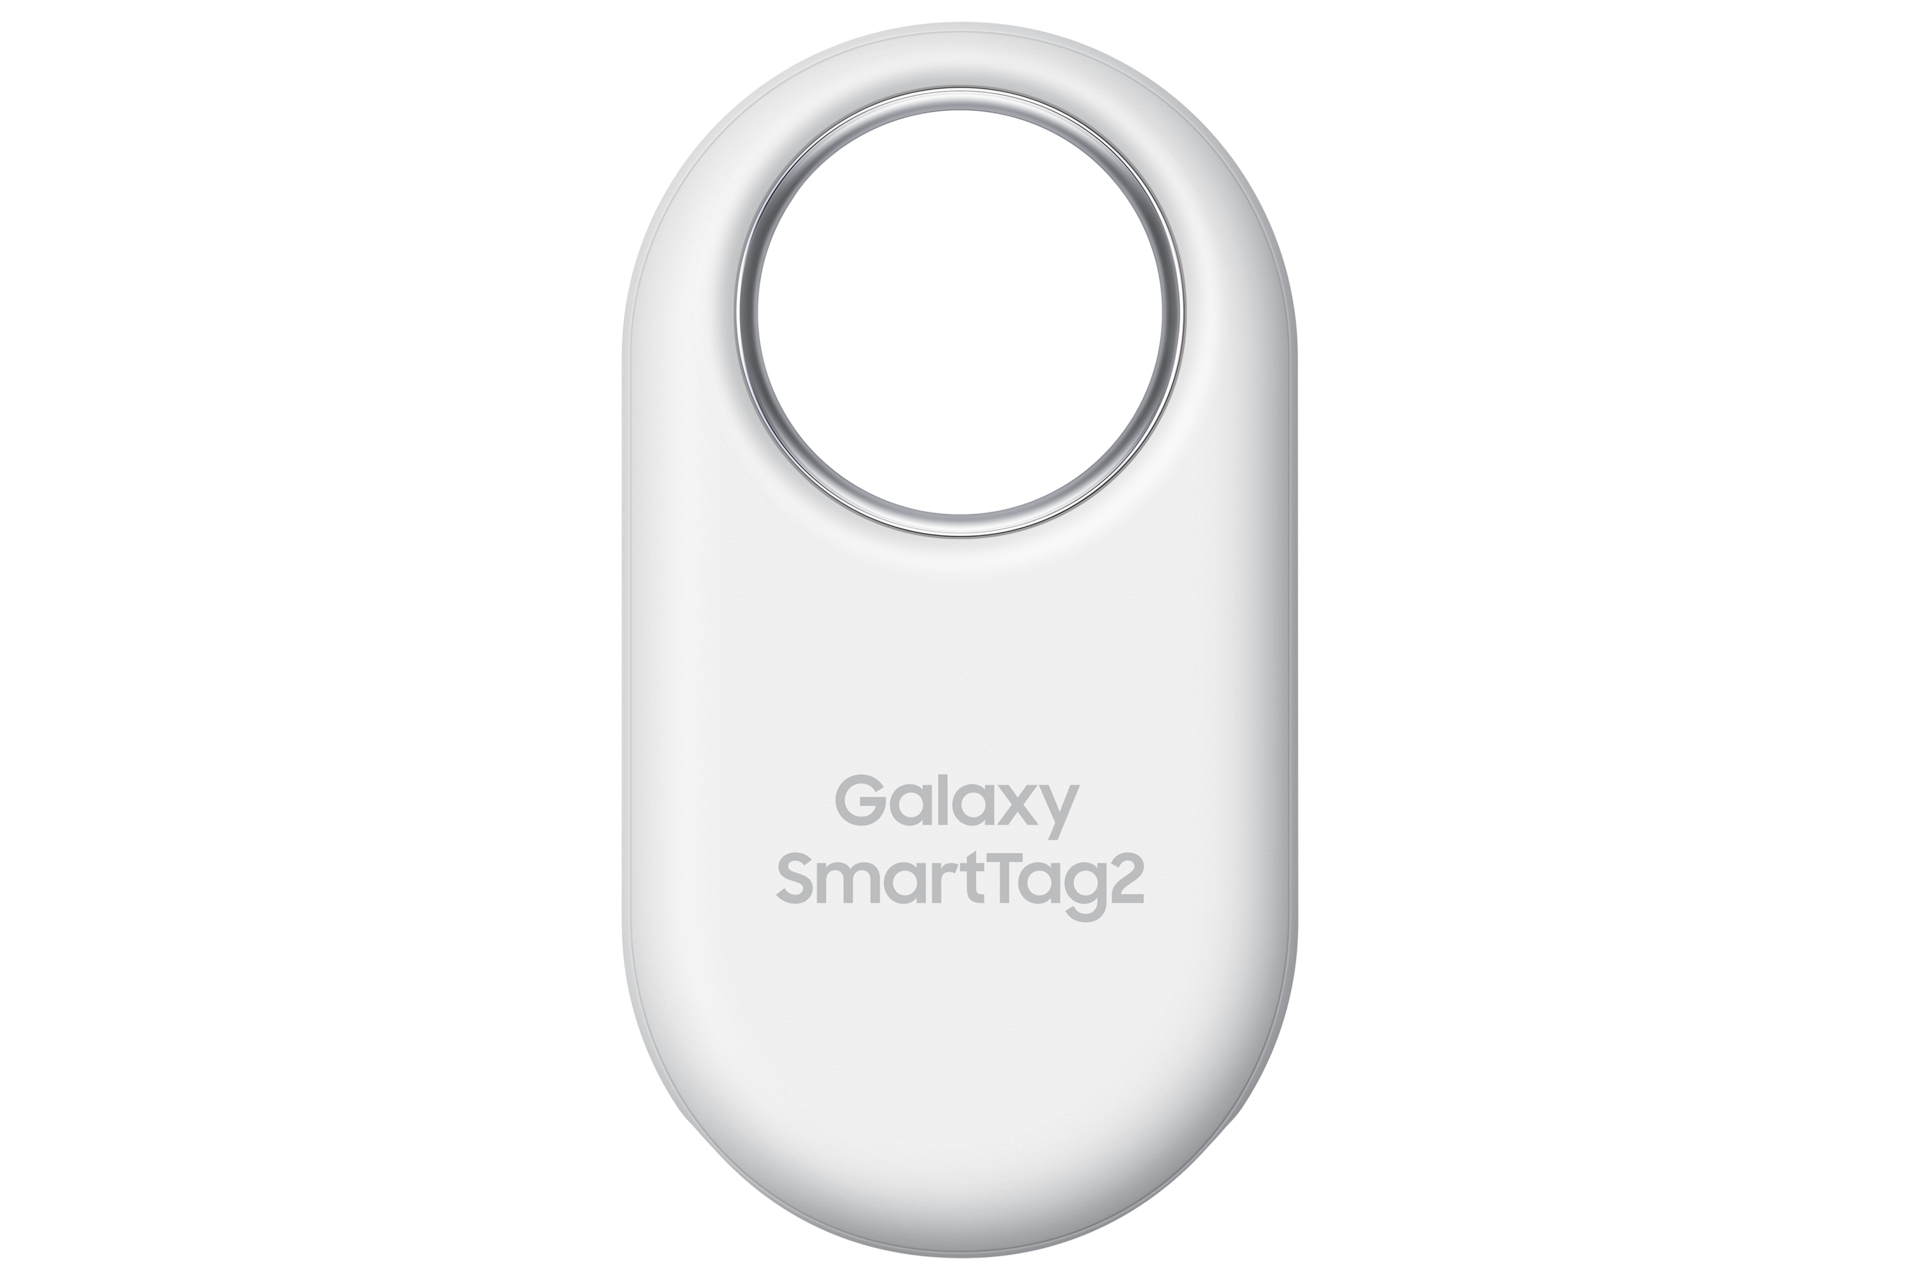 Lokalizator kluczy Samsung Galaxy SmartTag2 w kolorze białym - widok z przodu